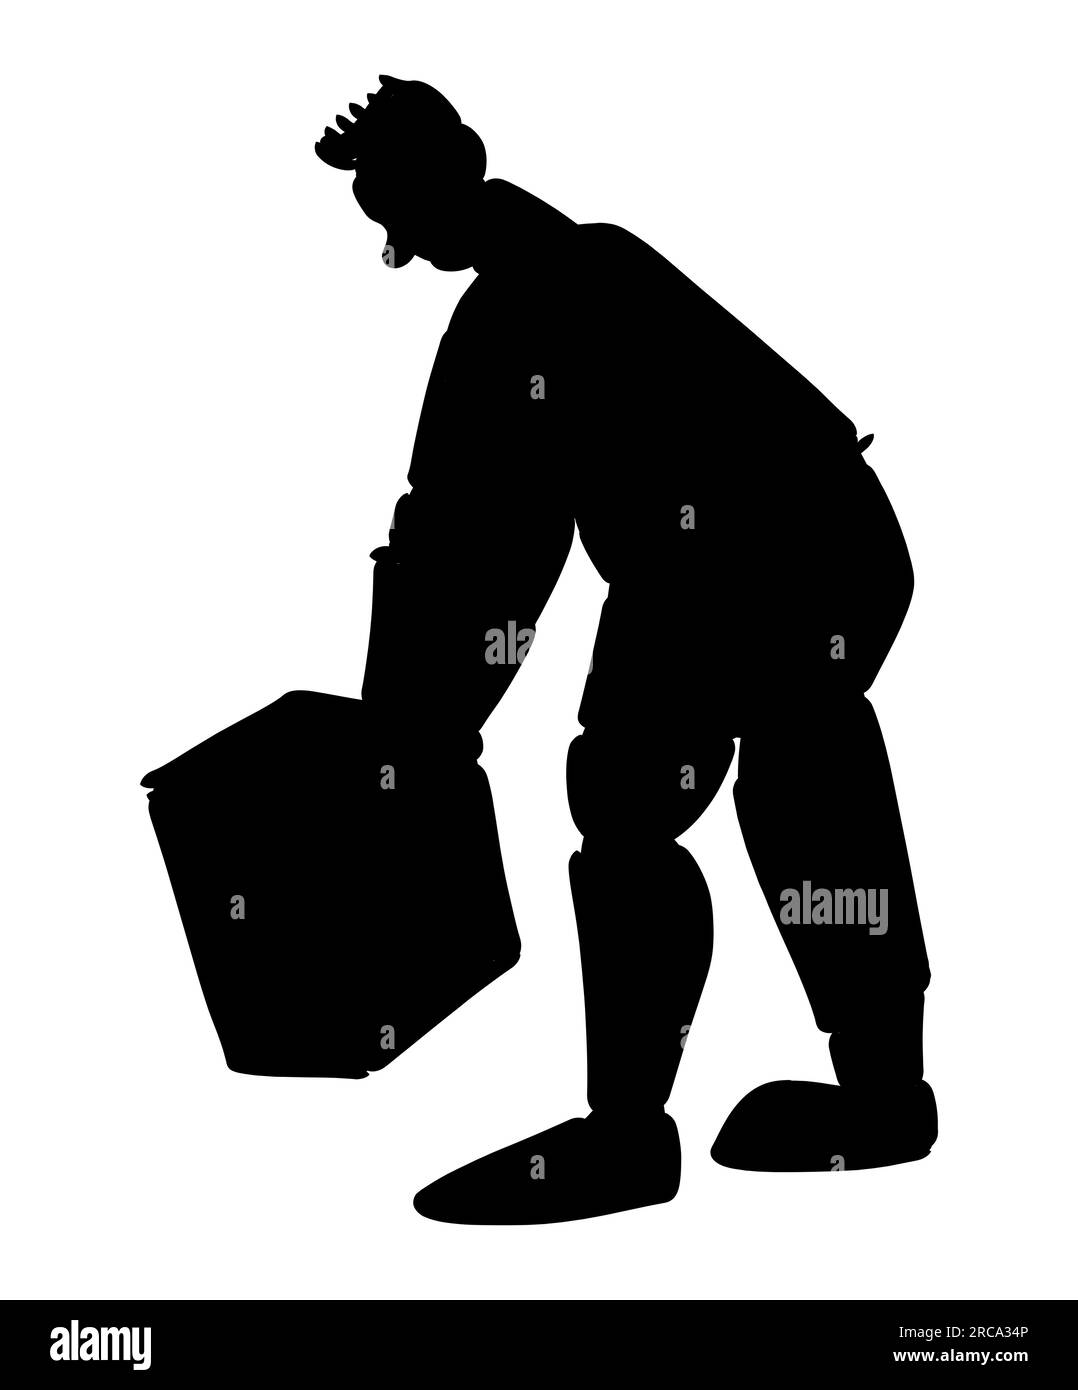 Schwarze Silhouette eines Postbeamten, der Pakete verteilt. Post-Service-Lieferung. Kartons und Pakettransporte, Vektor isoliert auf weiß Stock Vektor